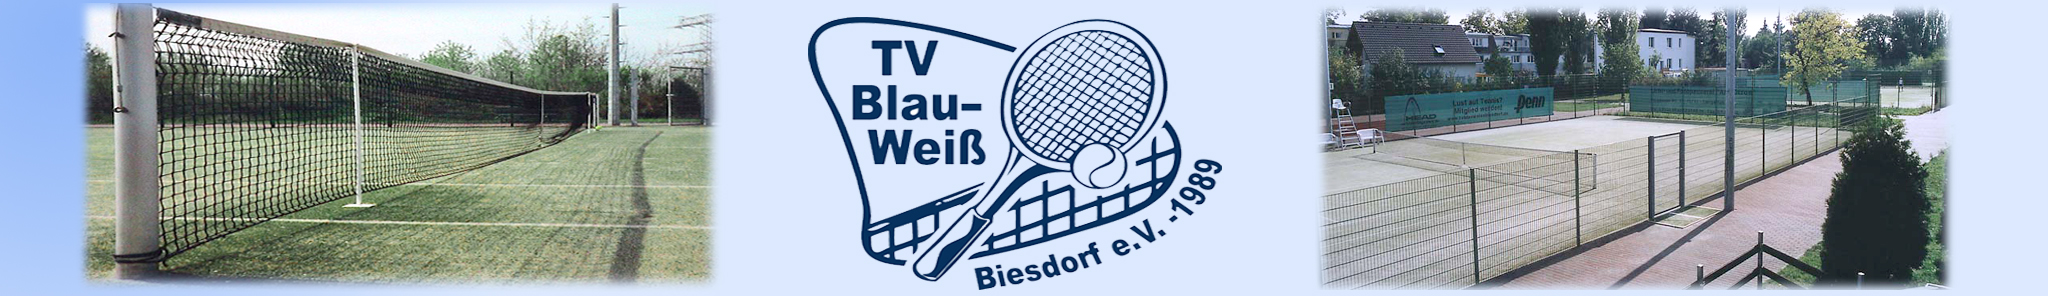 TV Blau Weiss Biesdorf e.V.